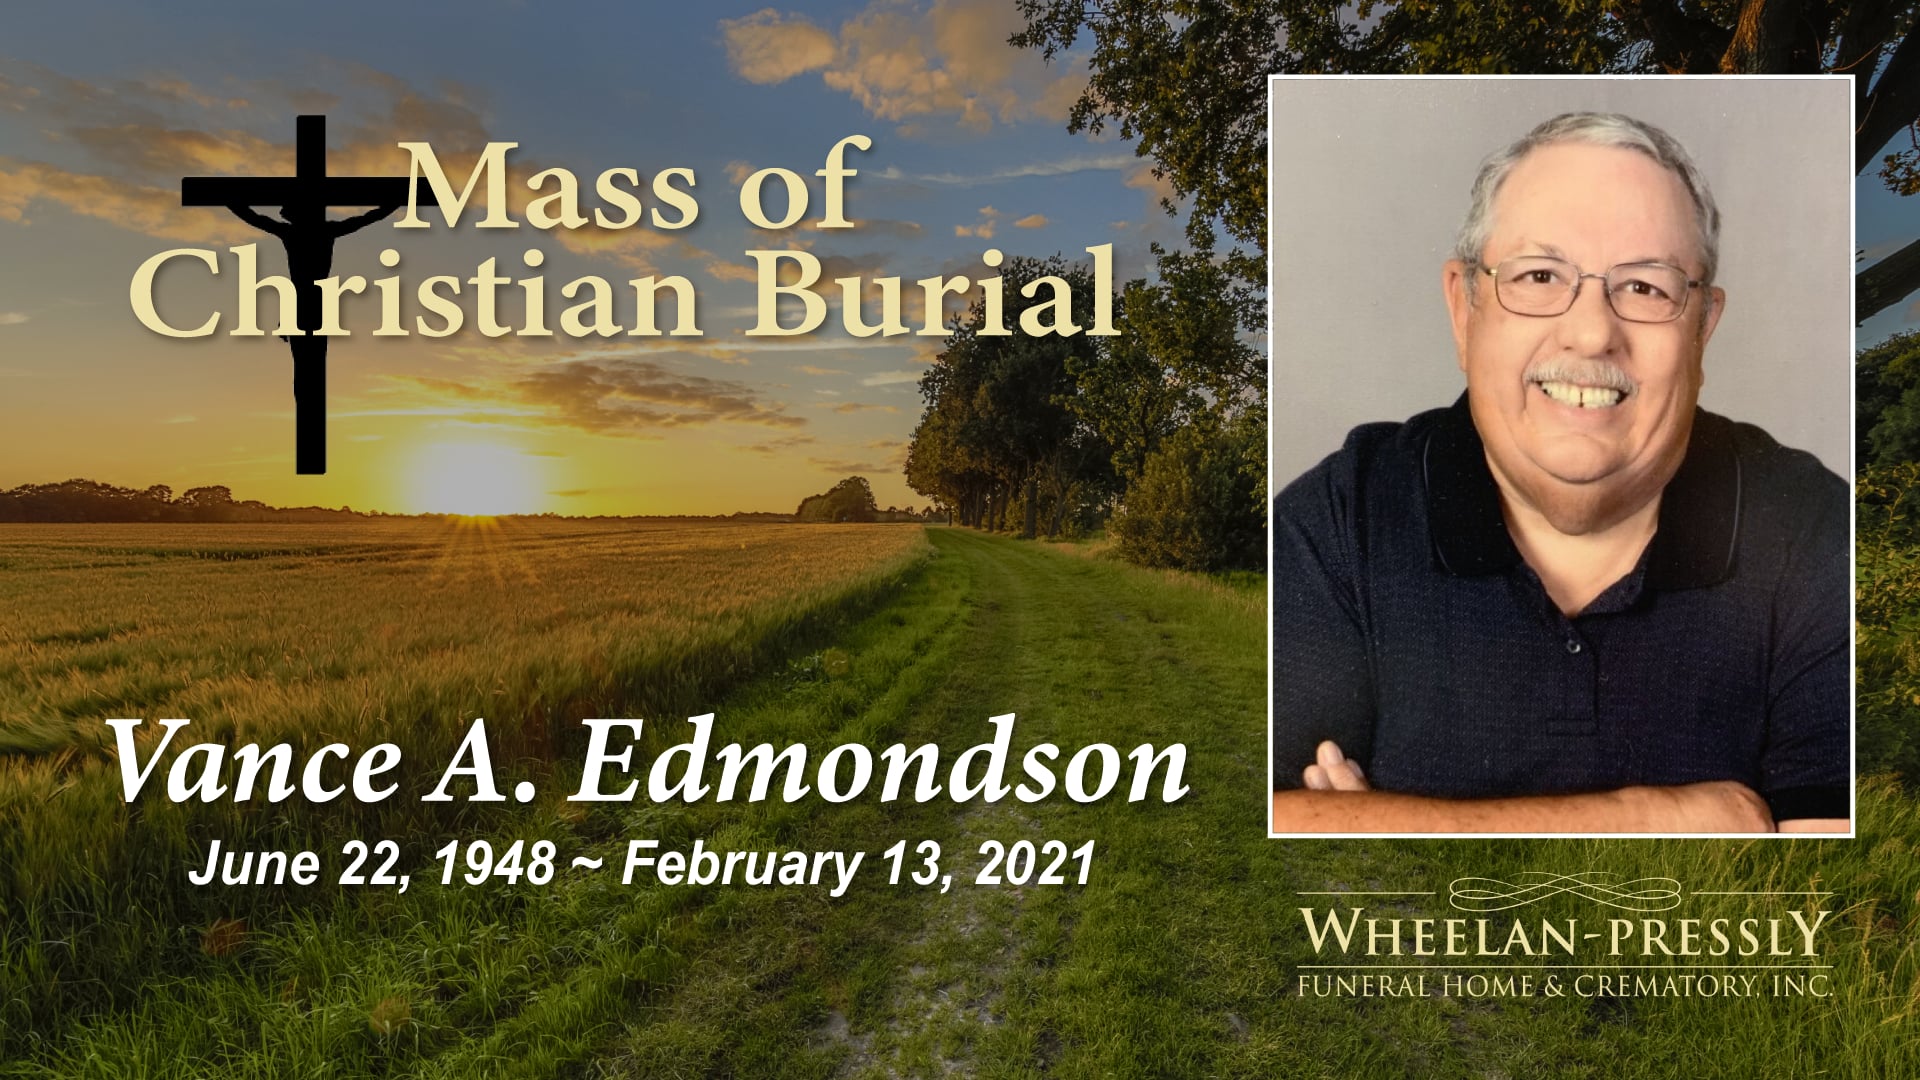 Mass of Christian Burial for Vance Edmondson